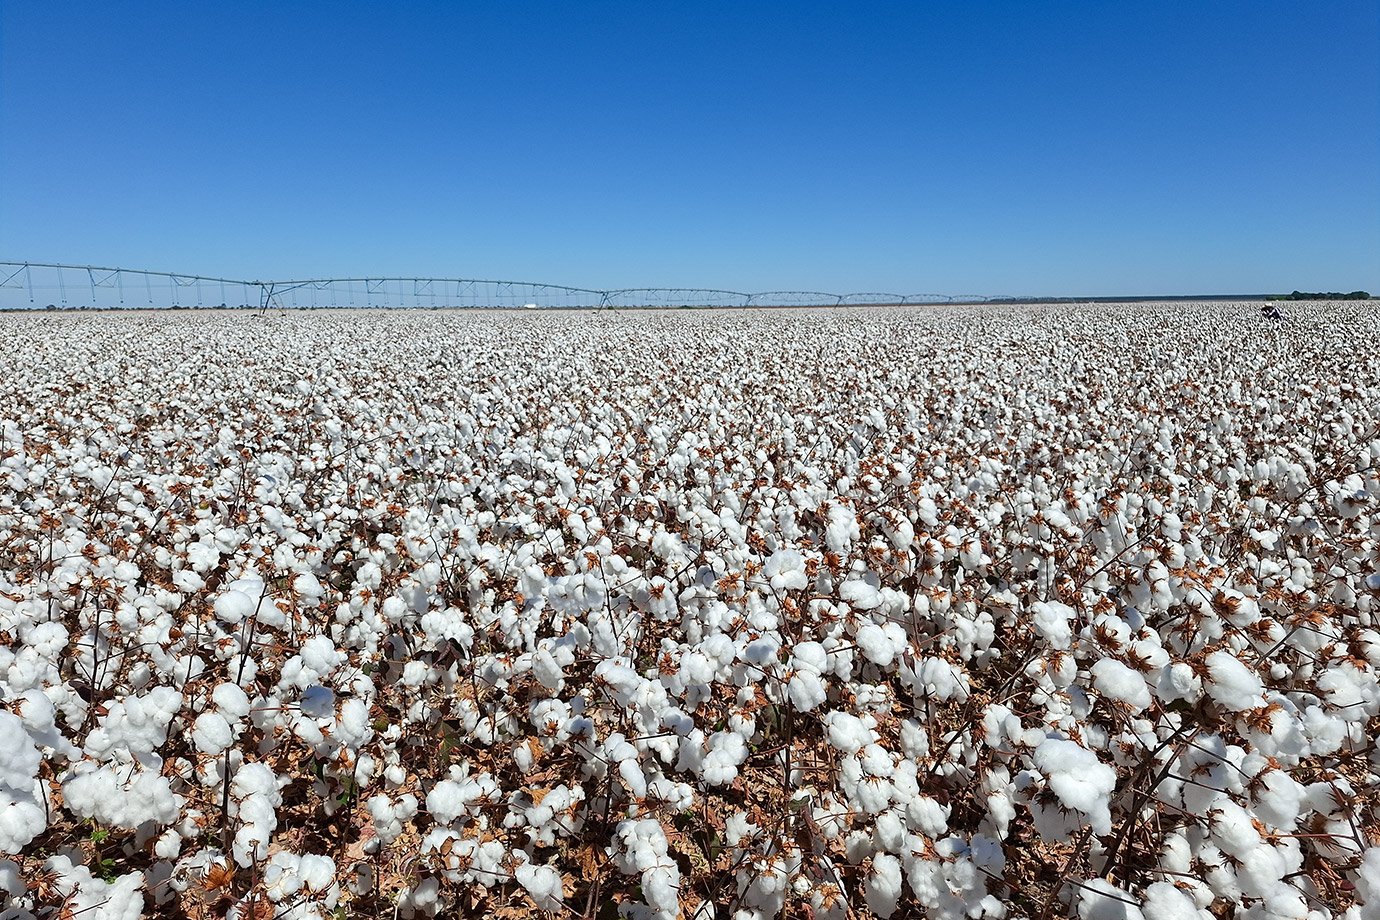 Brasil ultrapassa EUA e já é maior exportador de algodão do mundo